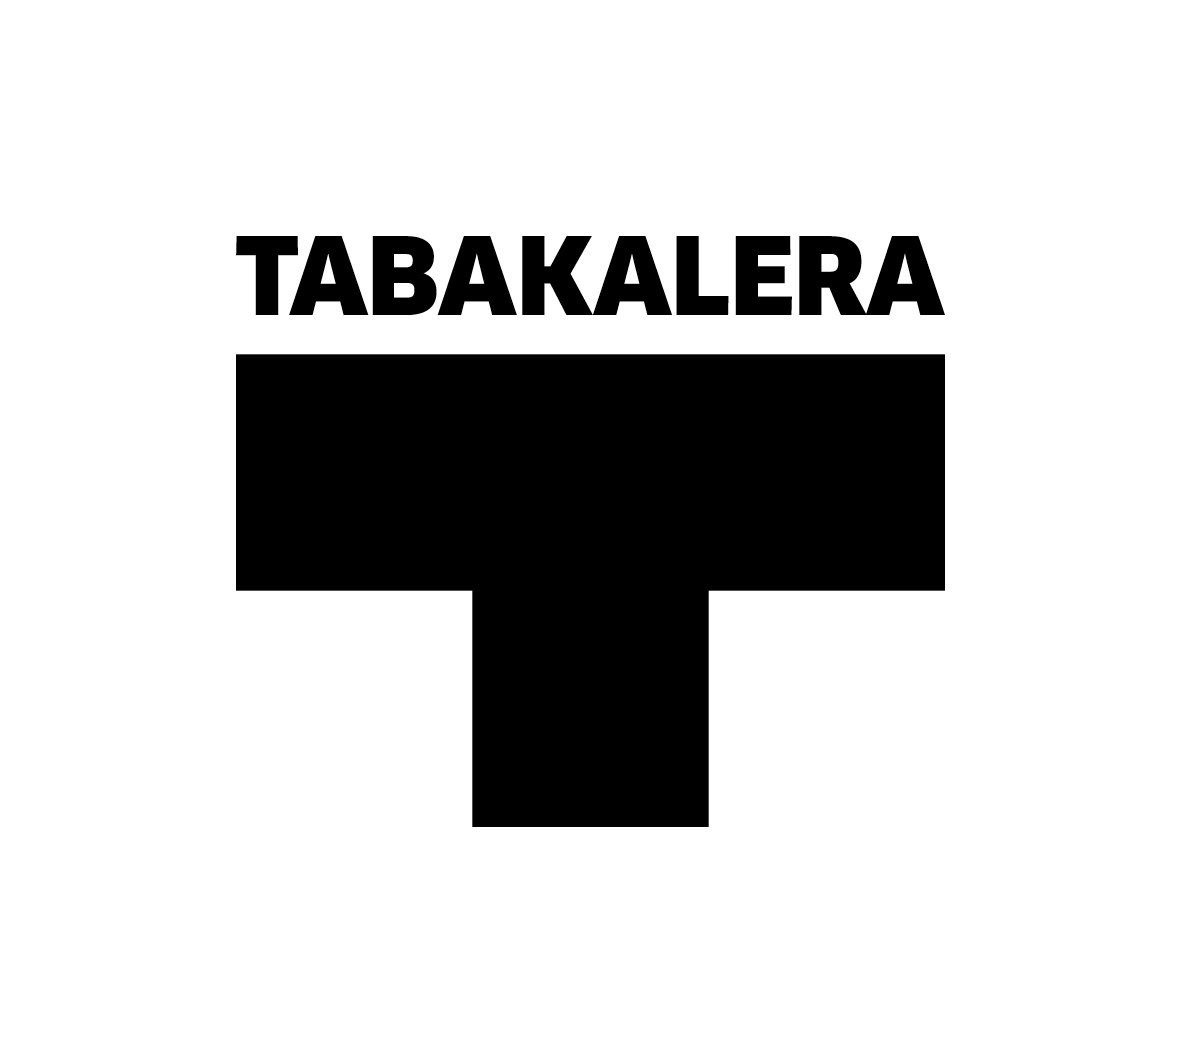 TABAKALERA SAN SILBESTREA - EGIA - DONOSTIA